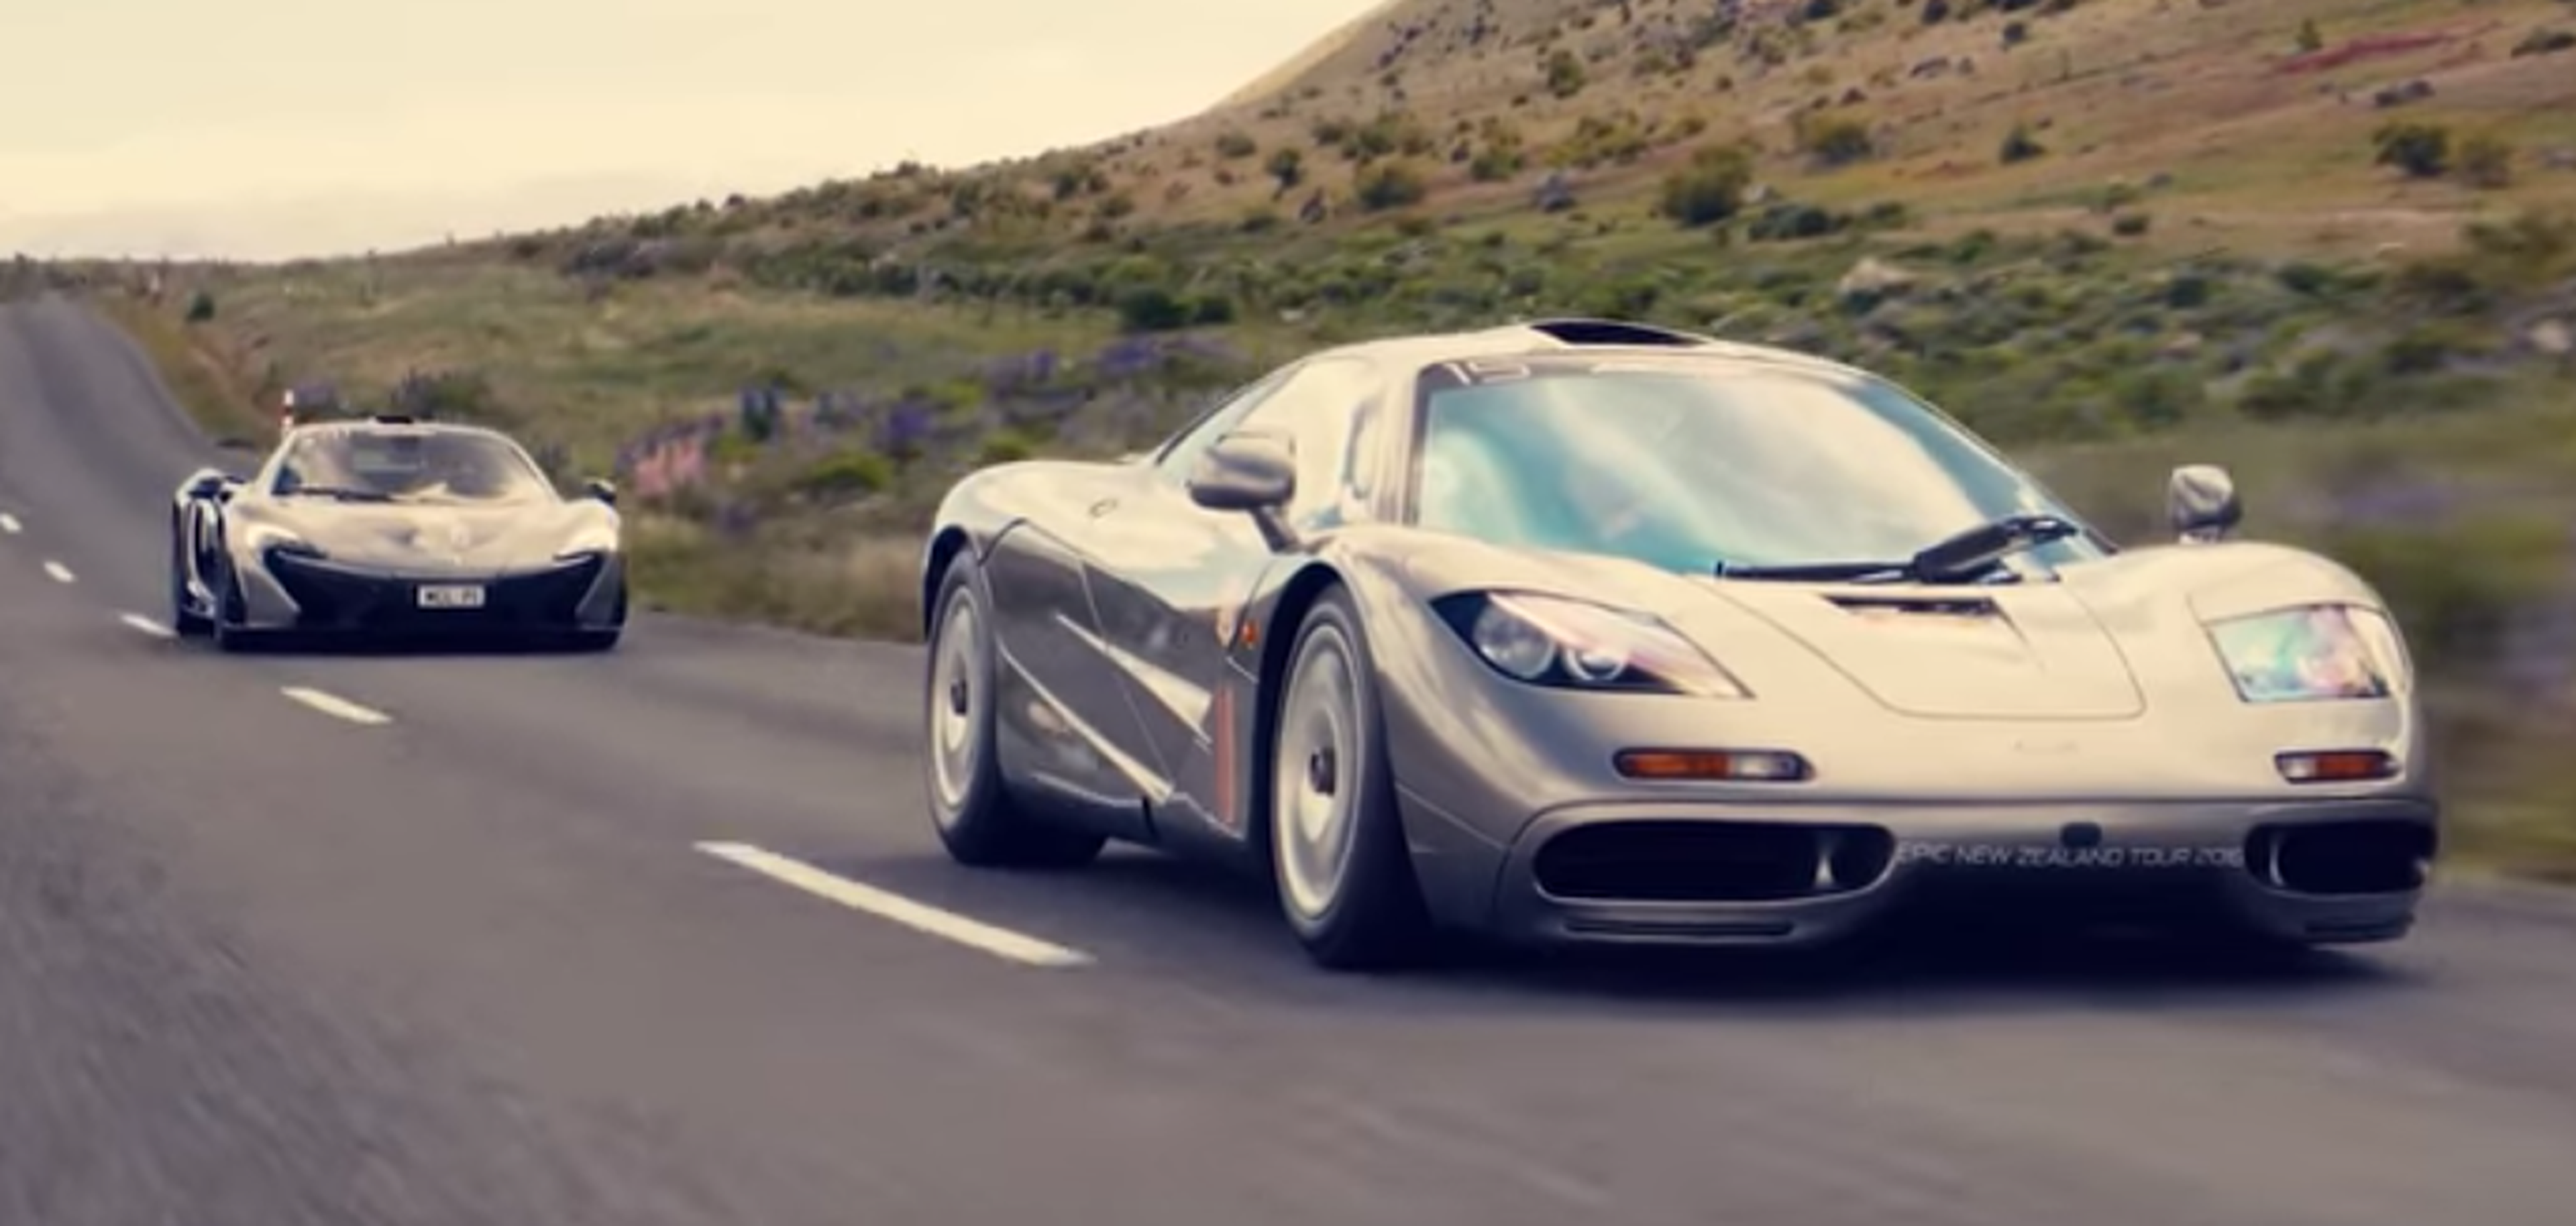 VÍDEO: La última aventura de McLaren, ¡querrías estar allí!